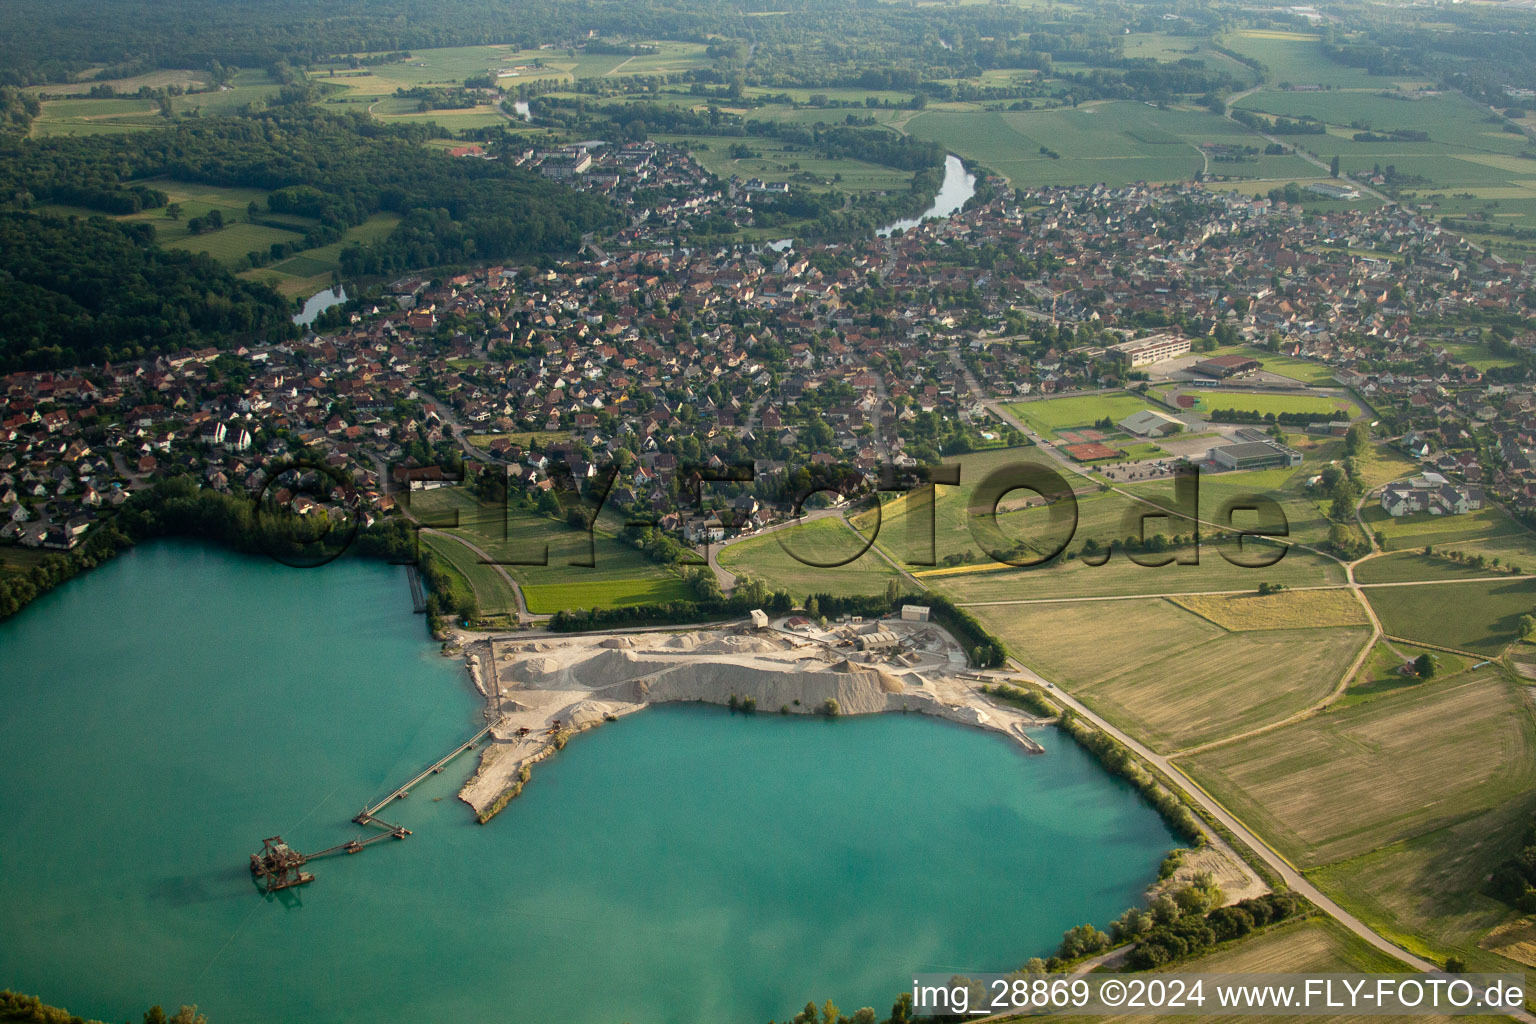 Luftbild von Gelände und Abraum- Flächen des Kies- Tagebau Gravière am Baggersee in La Wantzenau in Grand Est im Bundesland Bas-Rhin, Frankreich